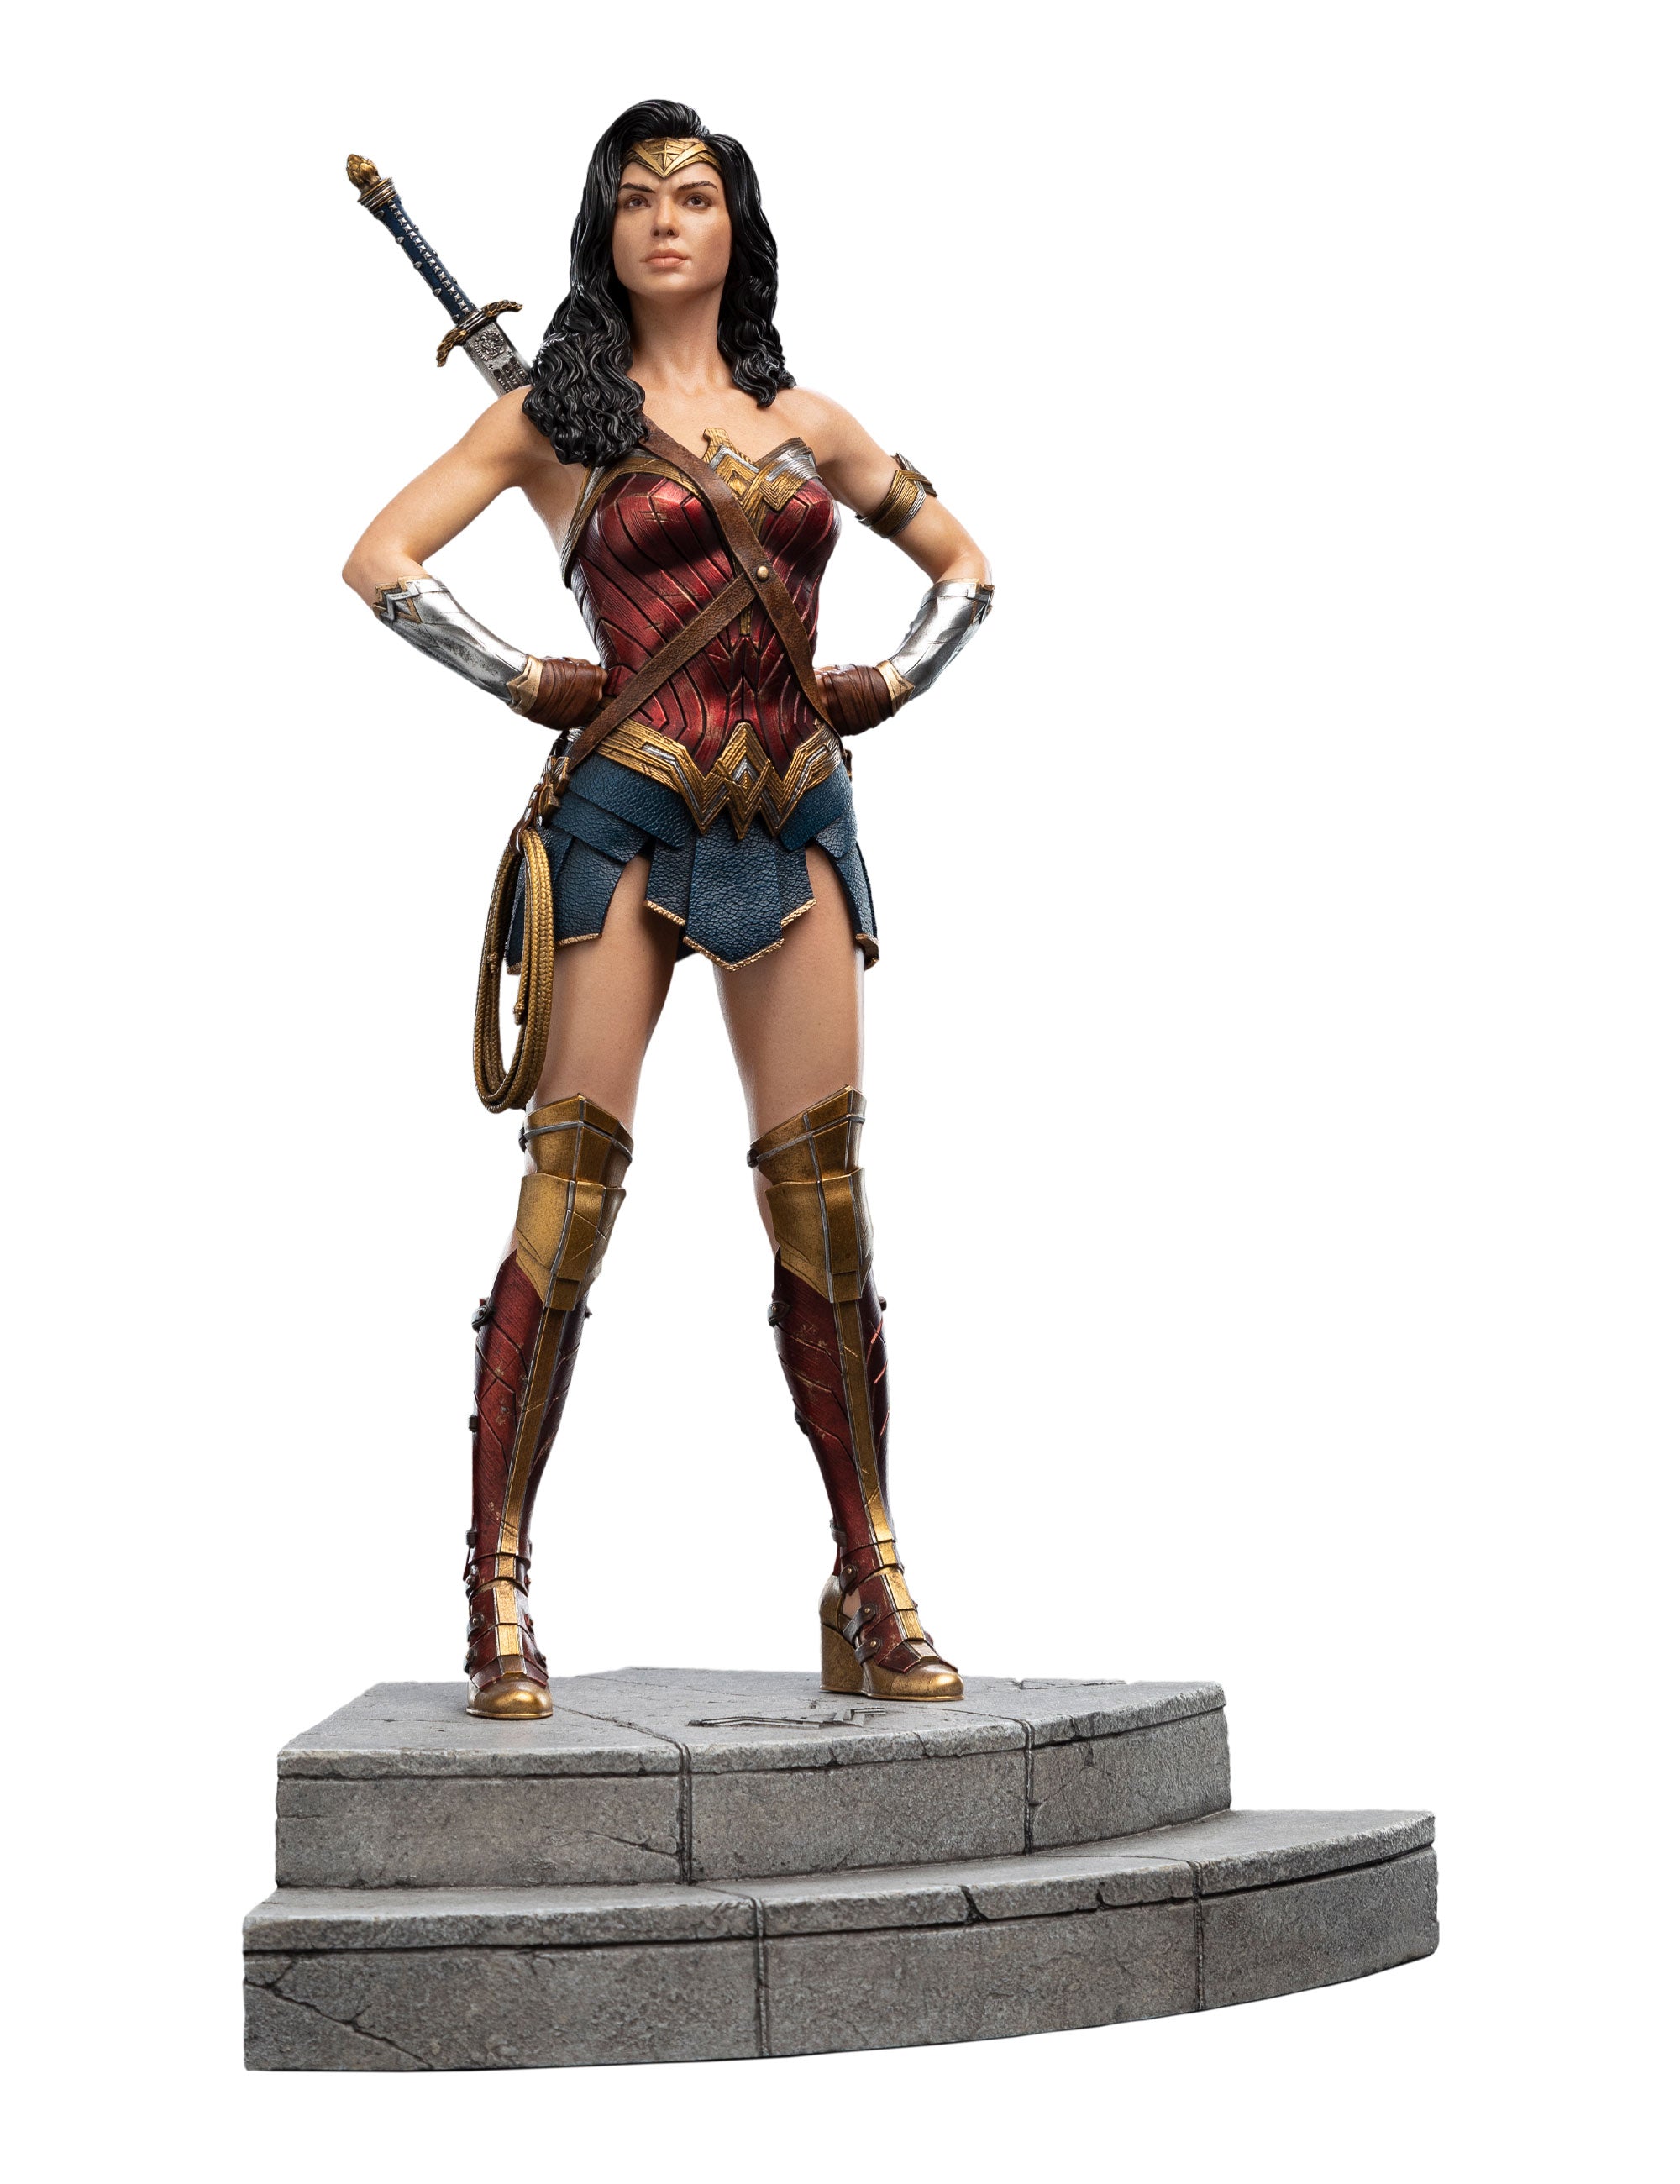 Justice League - Wonder Woman Trinity Series - Spec Fiction Shop